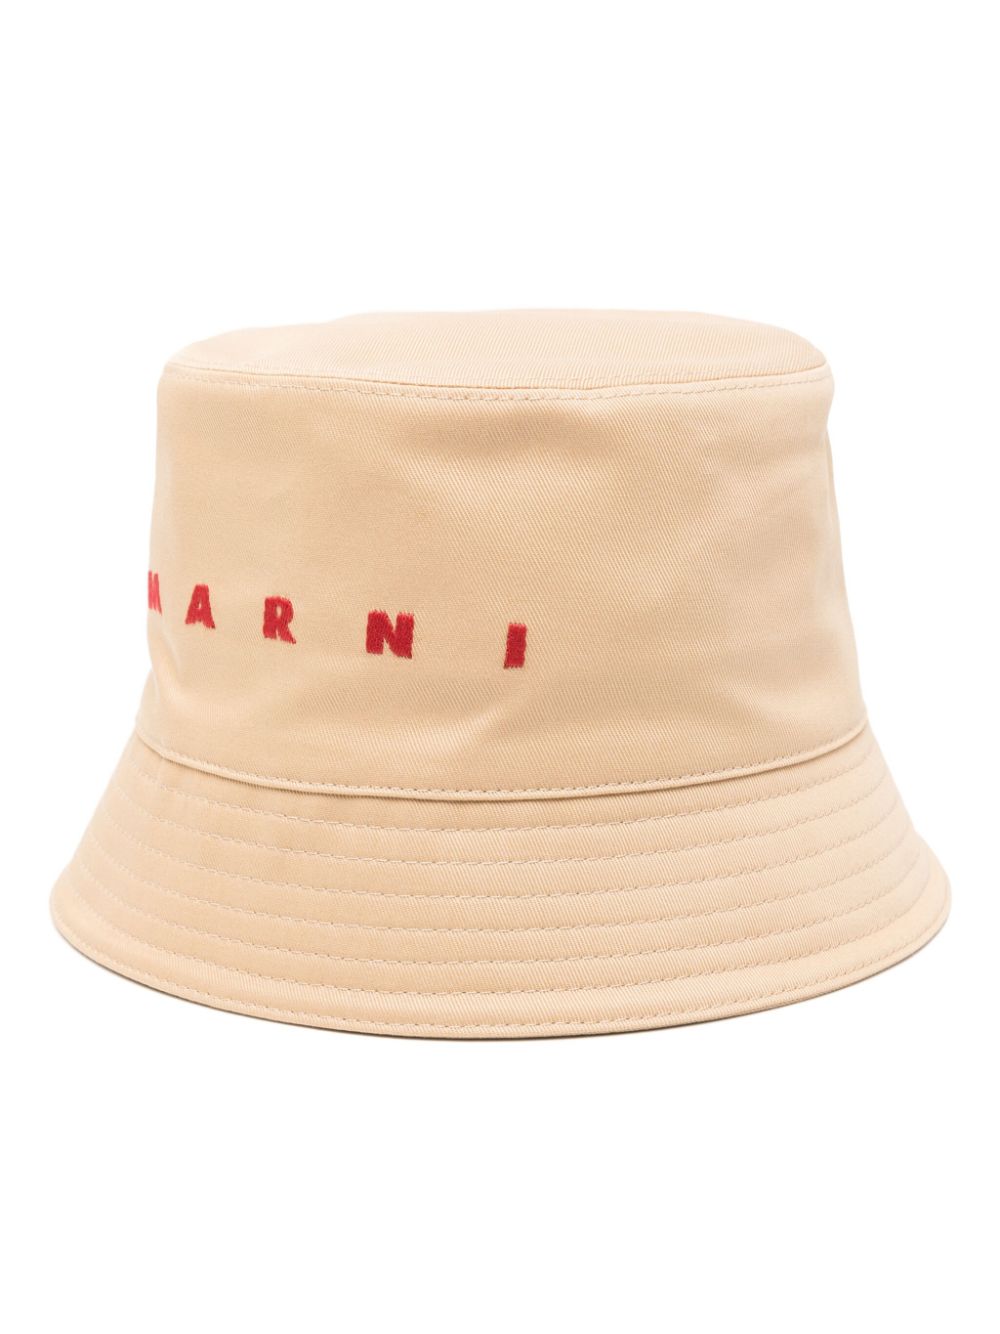 Marni logo-embroidered cotton bucket hat - Neutrals von Marni